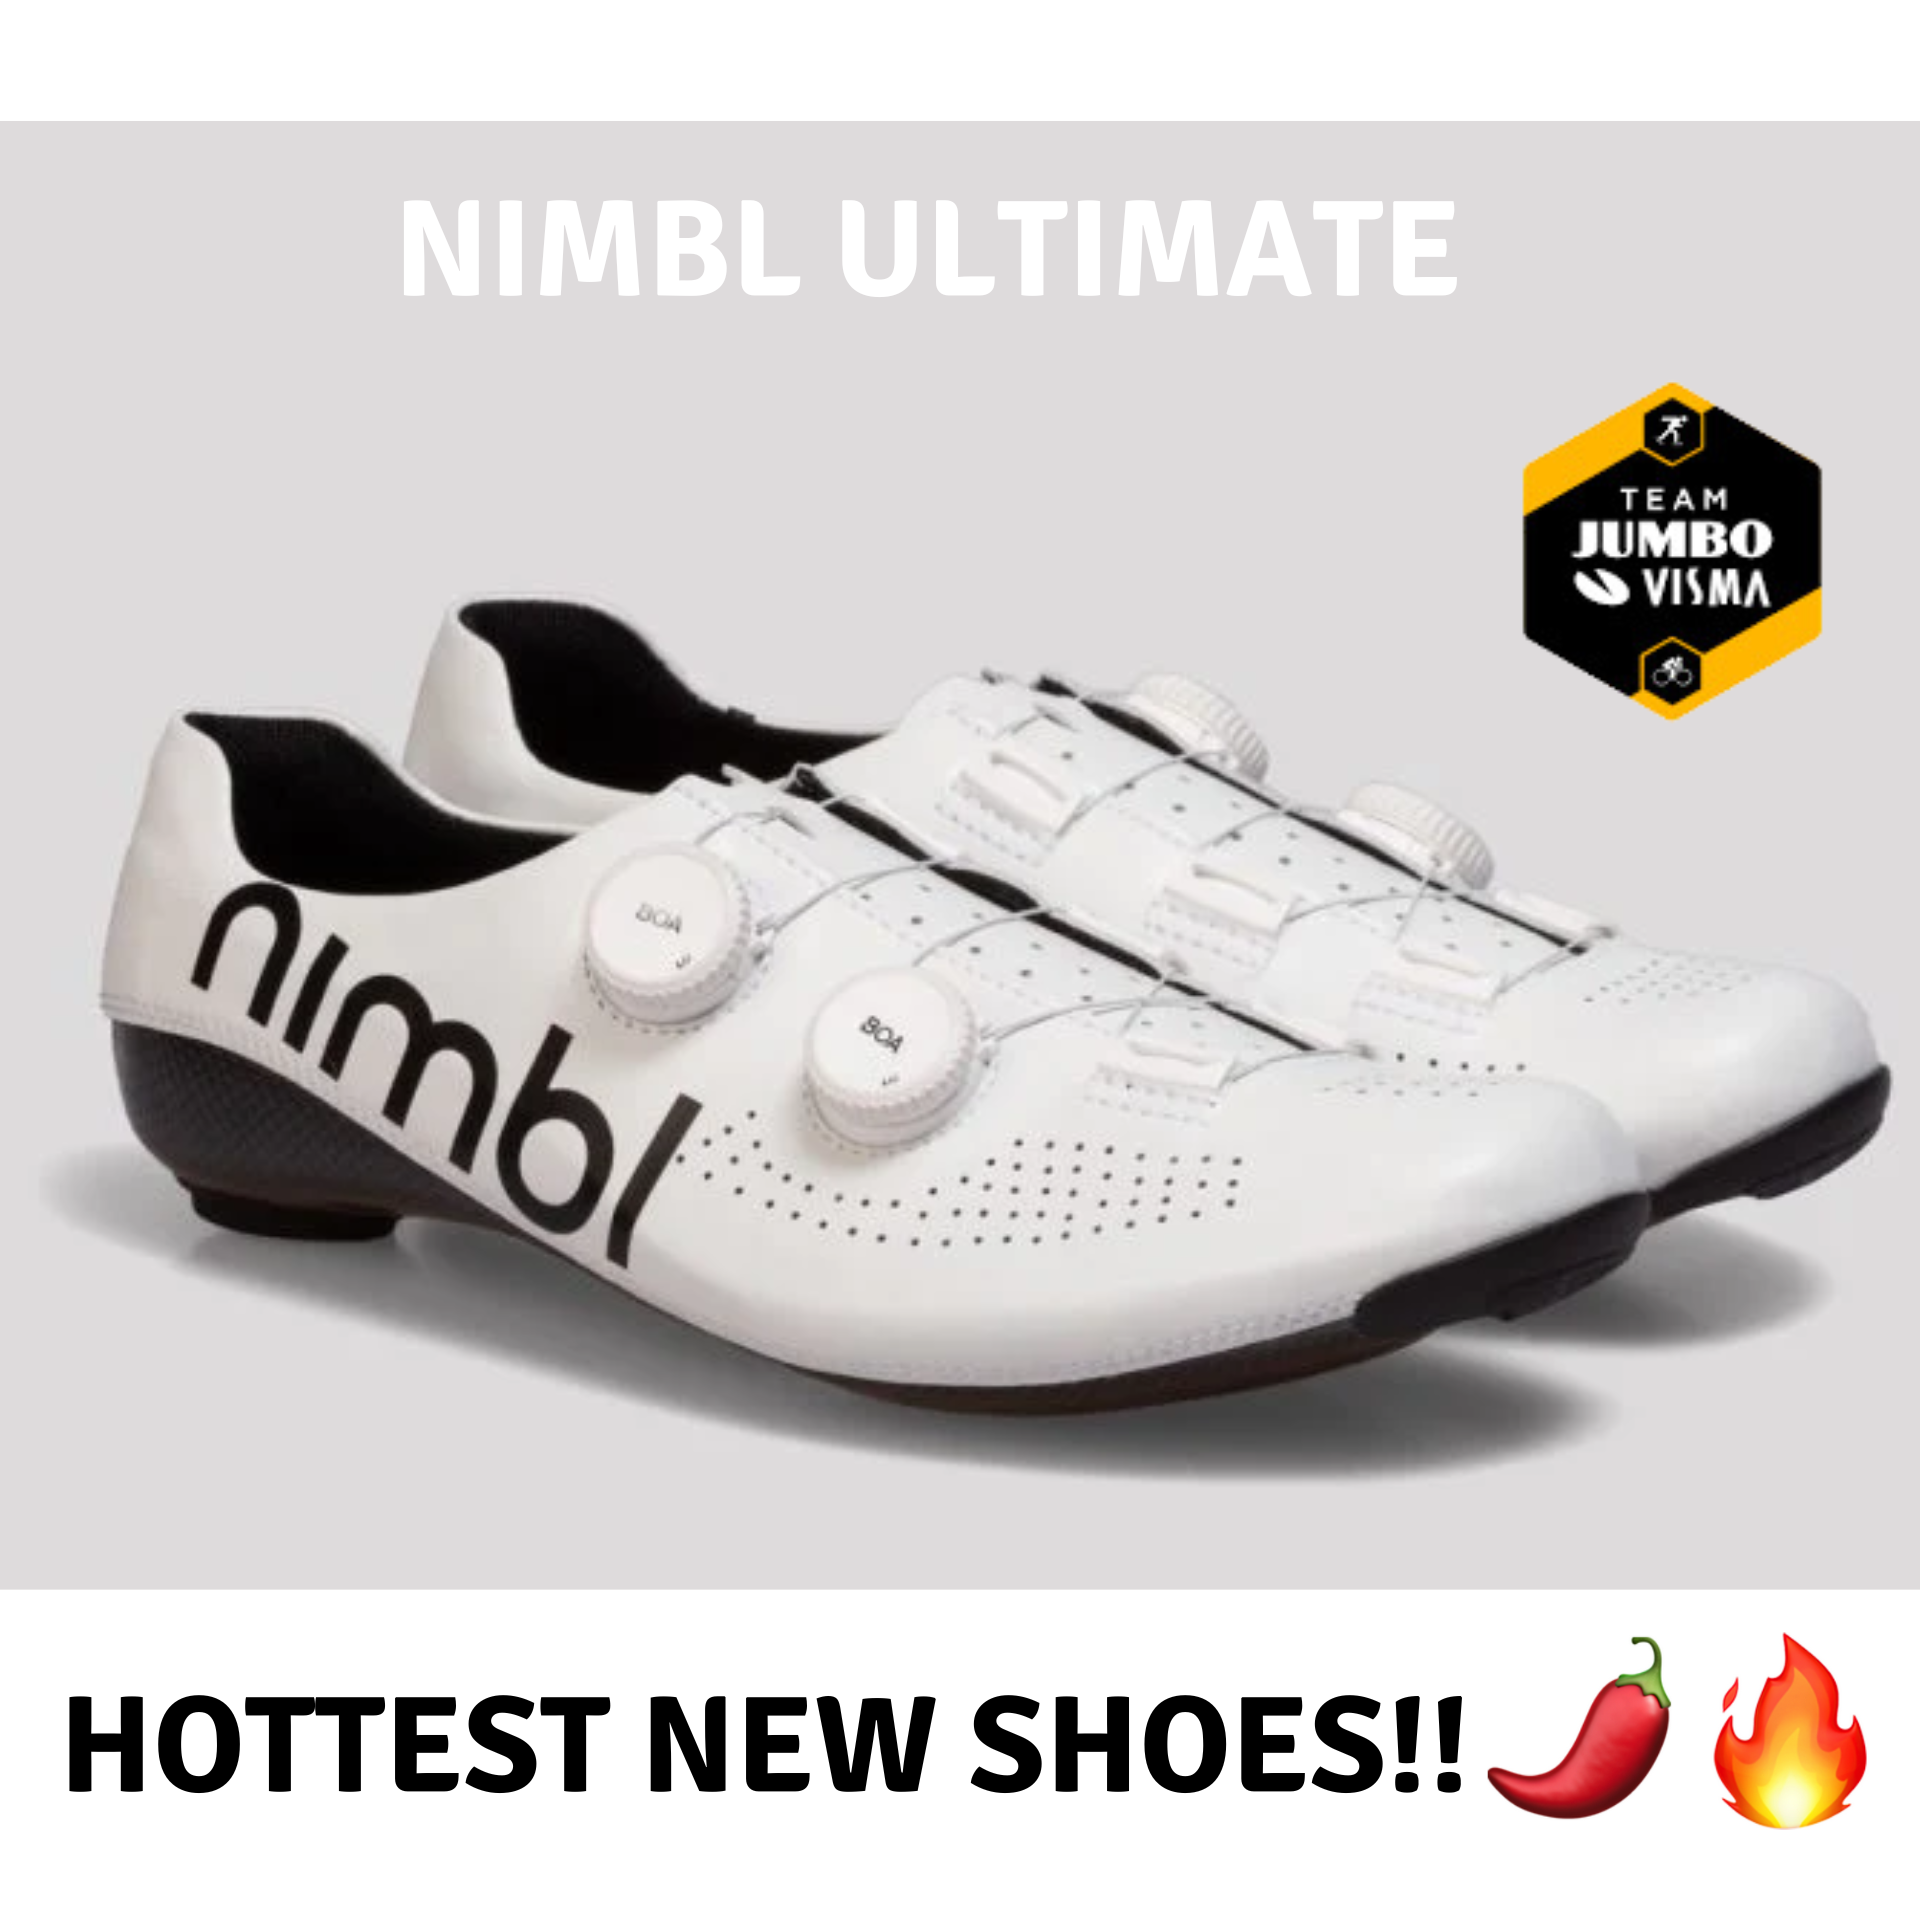 NIMBL ULTIMATE Pro Edition White